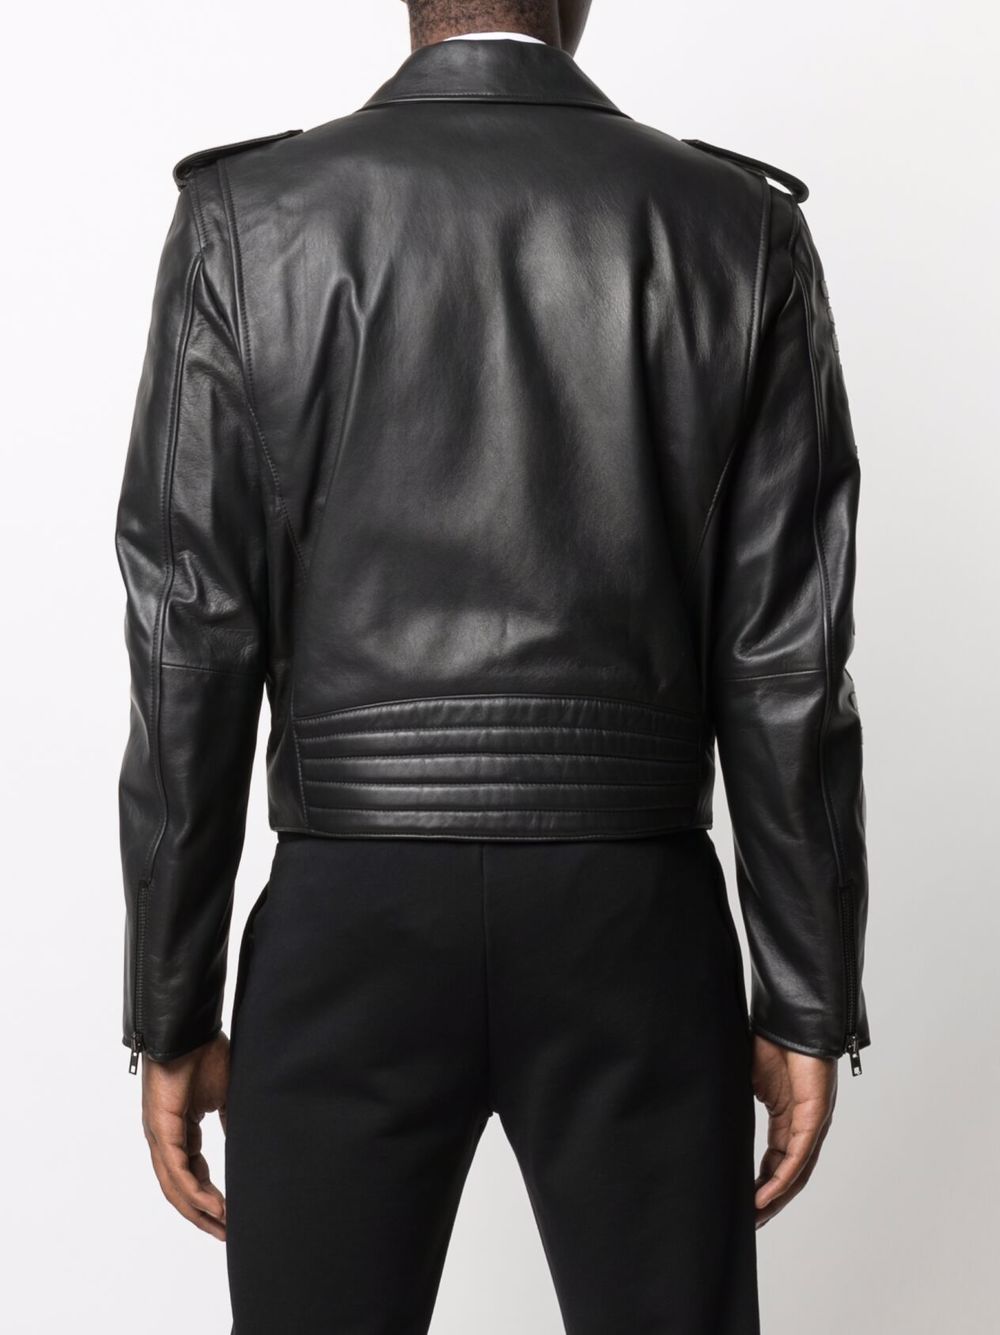 фото Moschino байкерская куртка с вышитым логотипом